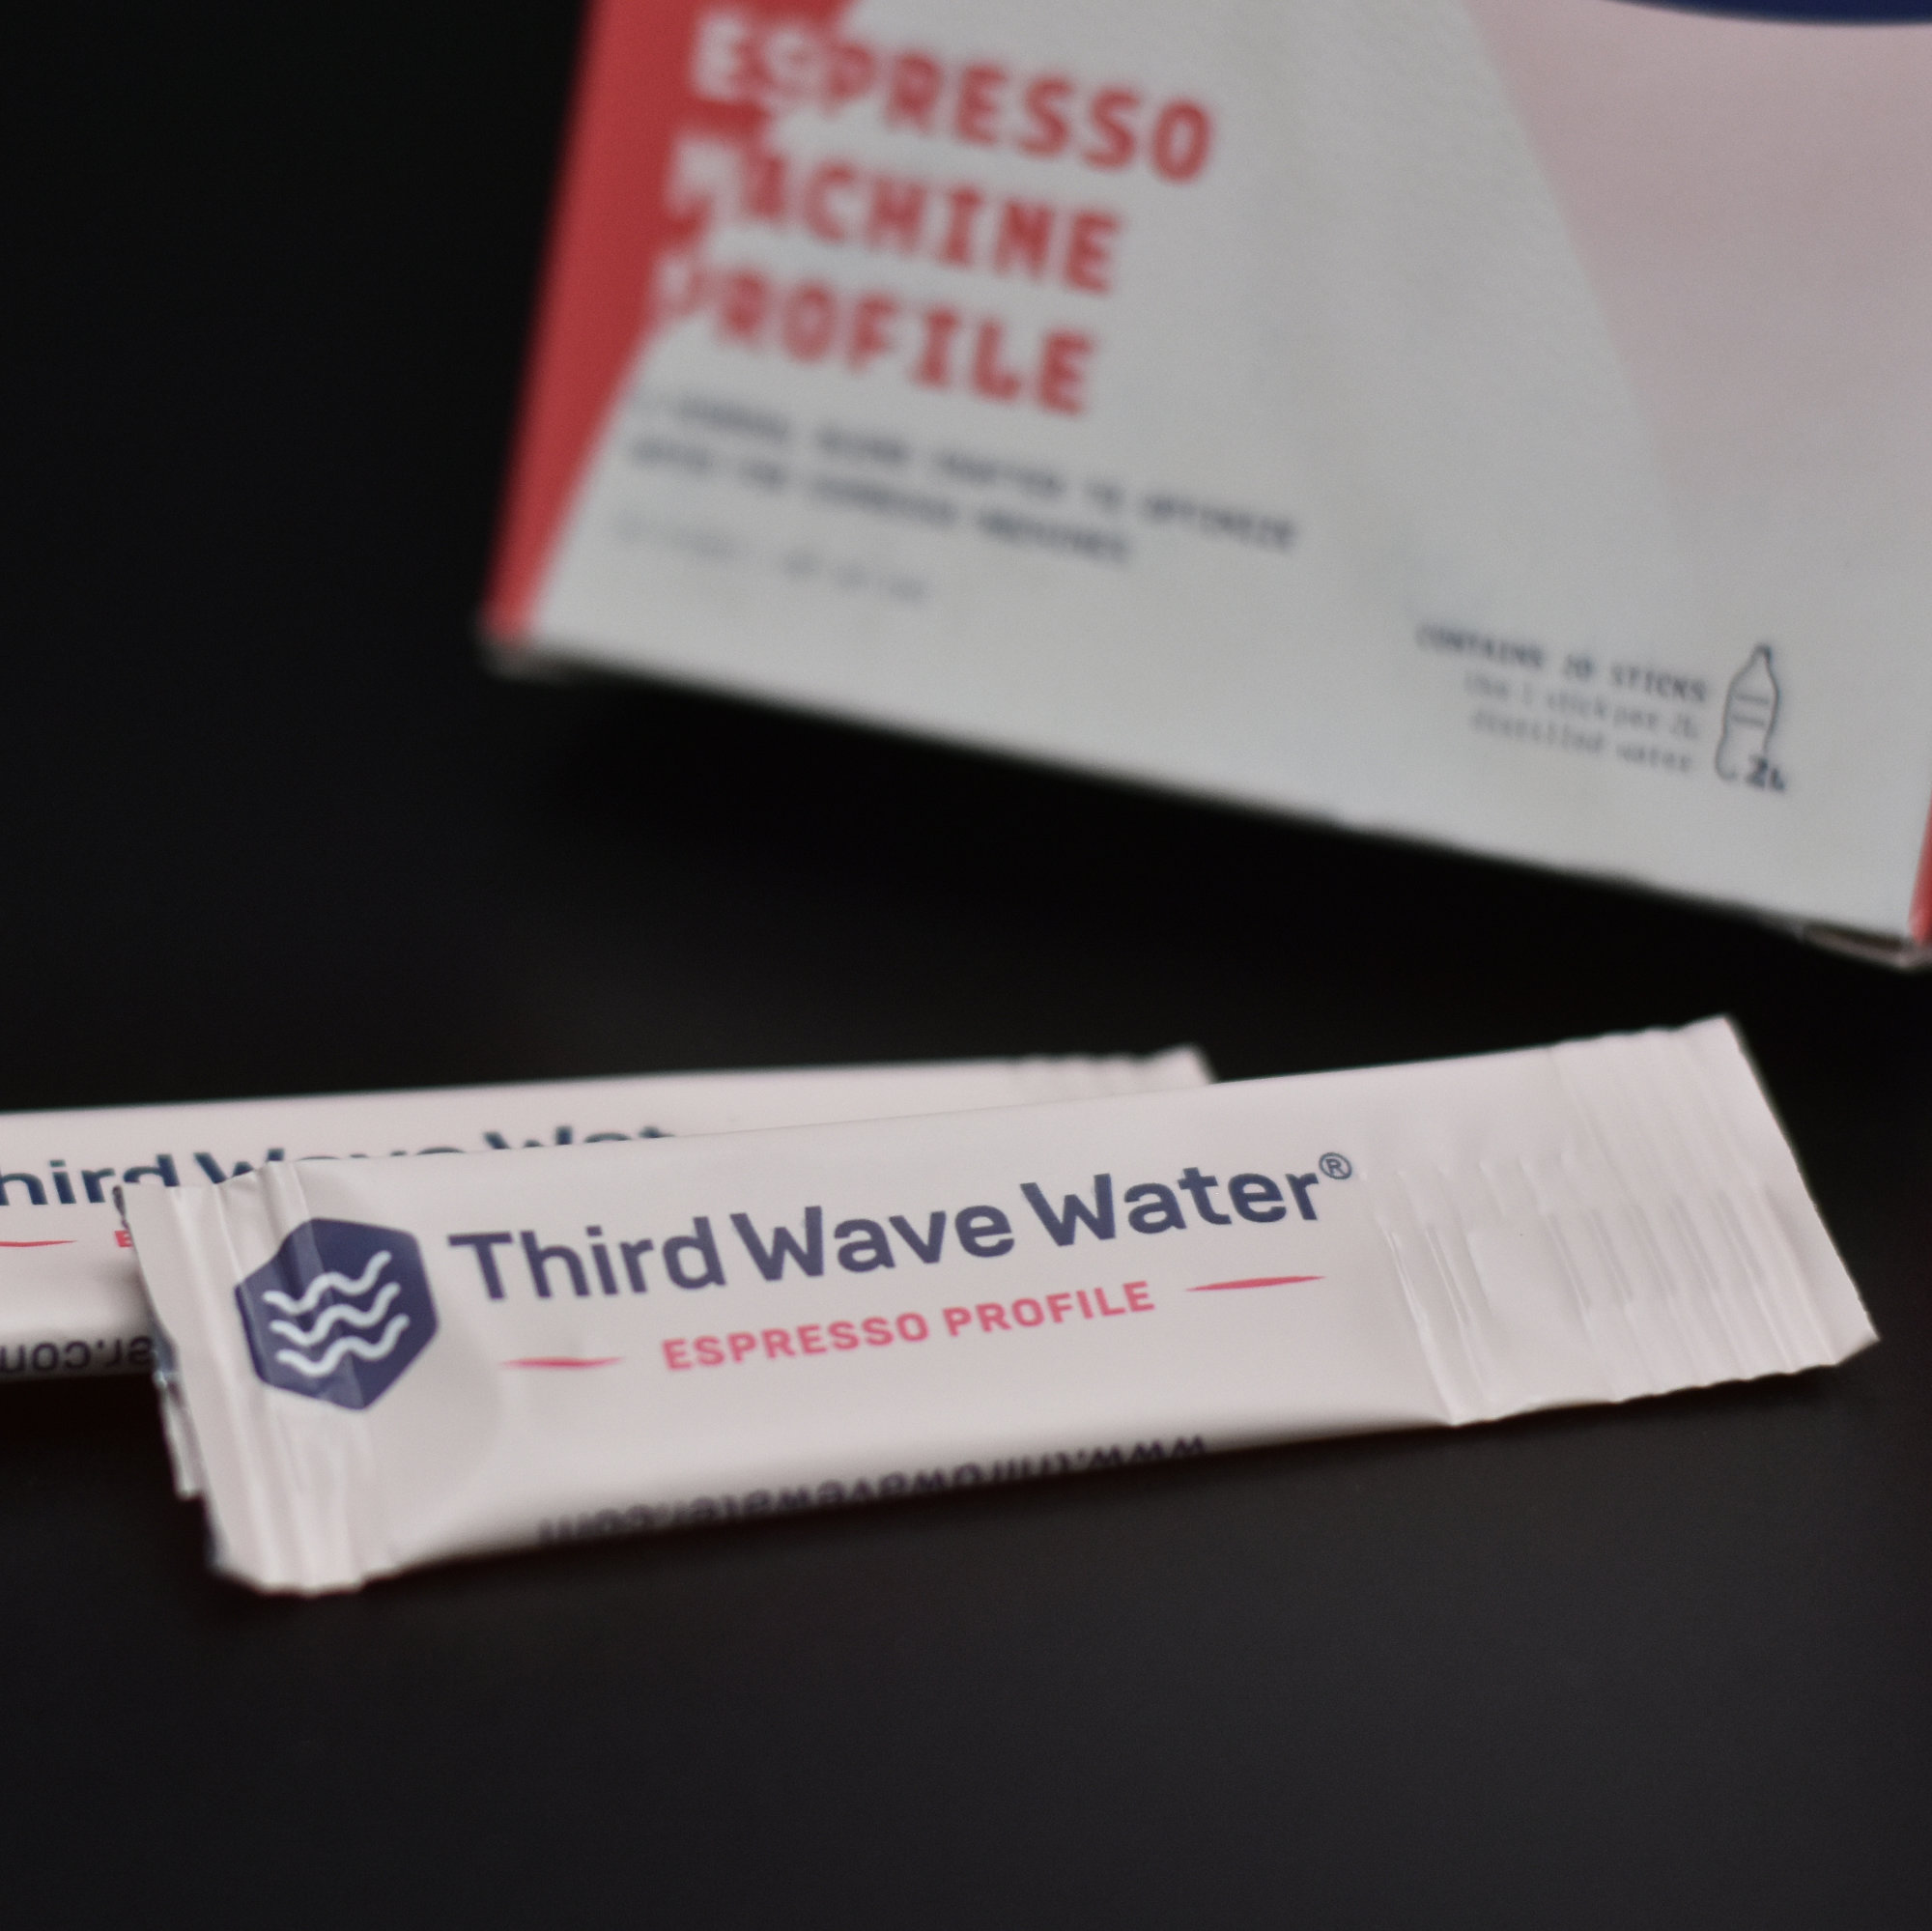 Third Wave Water Espresso 20x 2l